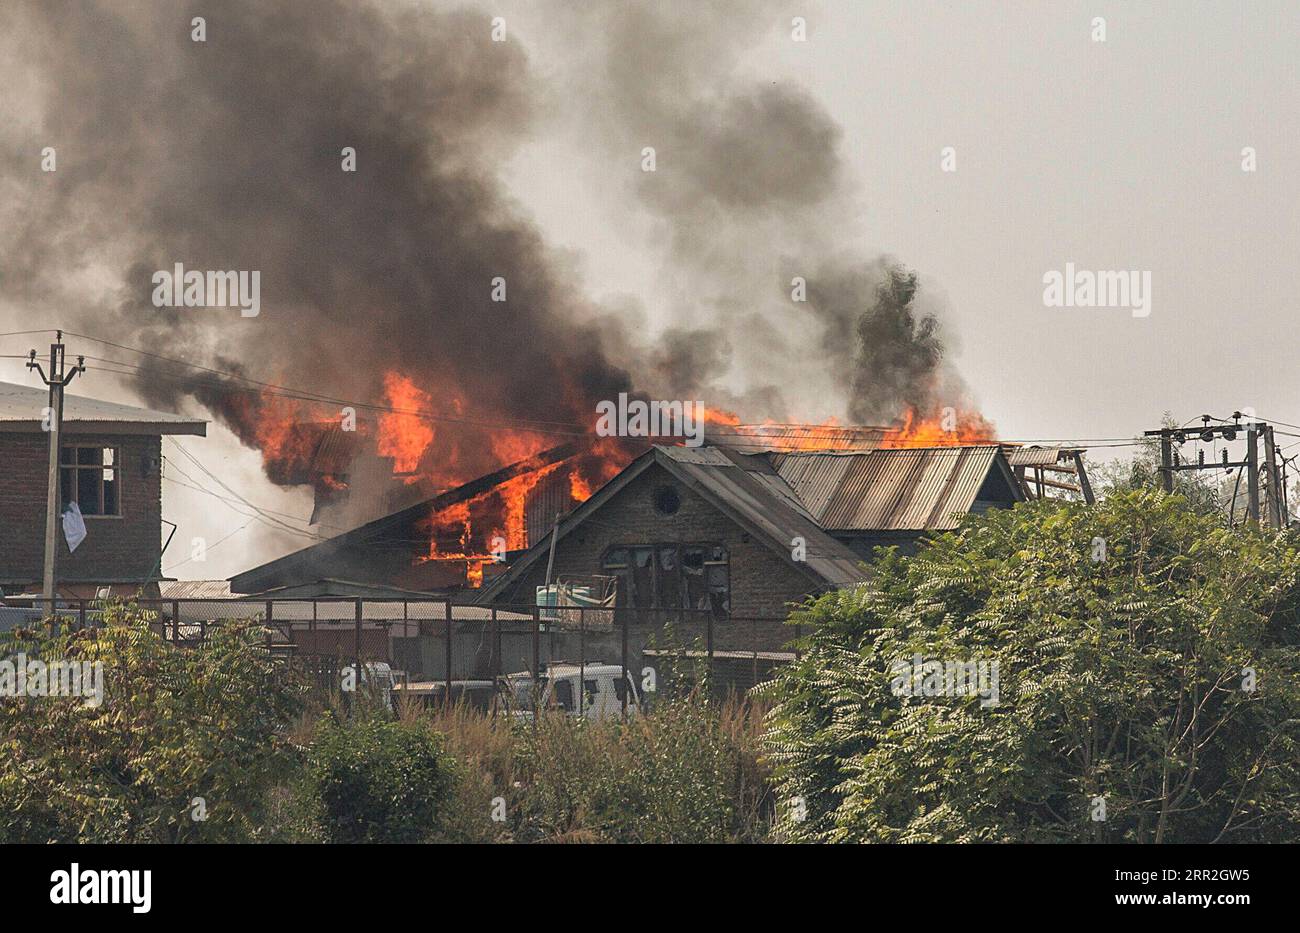 201012 -- SRINAGAR, 12 ottobre 2020 -- le fiamme escono da una casa durante uno scontro a fuoco nella città di Srinagar, la capitale estiva del Kashmir controllato dagli indiani, 12 ottobre 2020. Due militanti sono stati uccisi lunedì in uno scontro a fuoco con le forze governative nel Kashmir controllato dagli indiani, ha detto la polizia. KASHMIR-SRINAGAR-GUNFIGHT JavedxDar PUBLICATIONxNOTxINxCHN Foto Stock